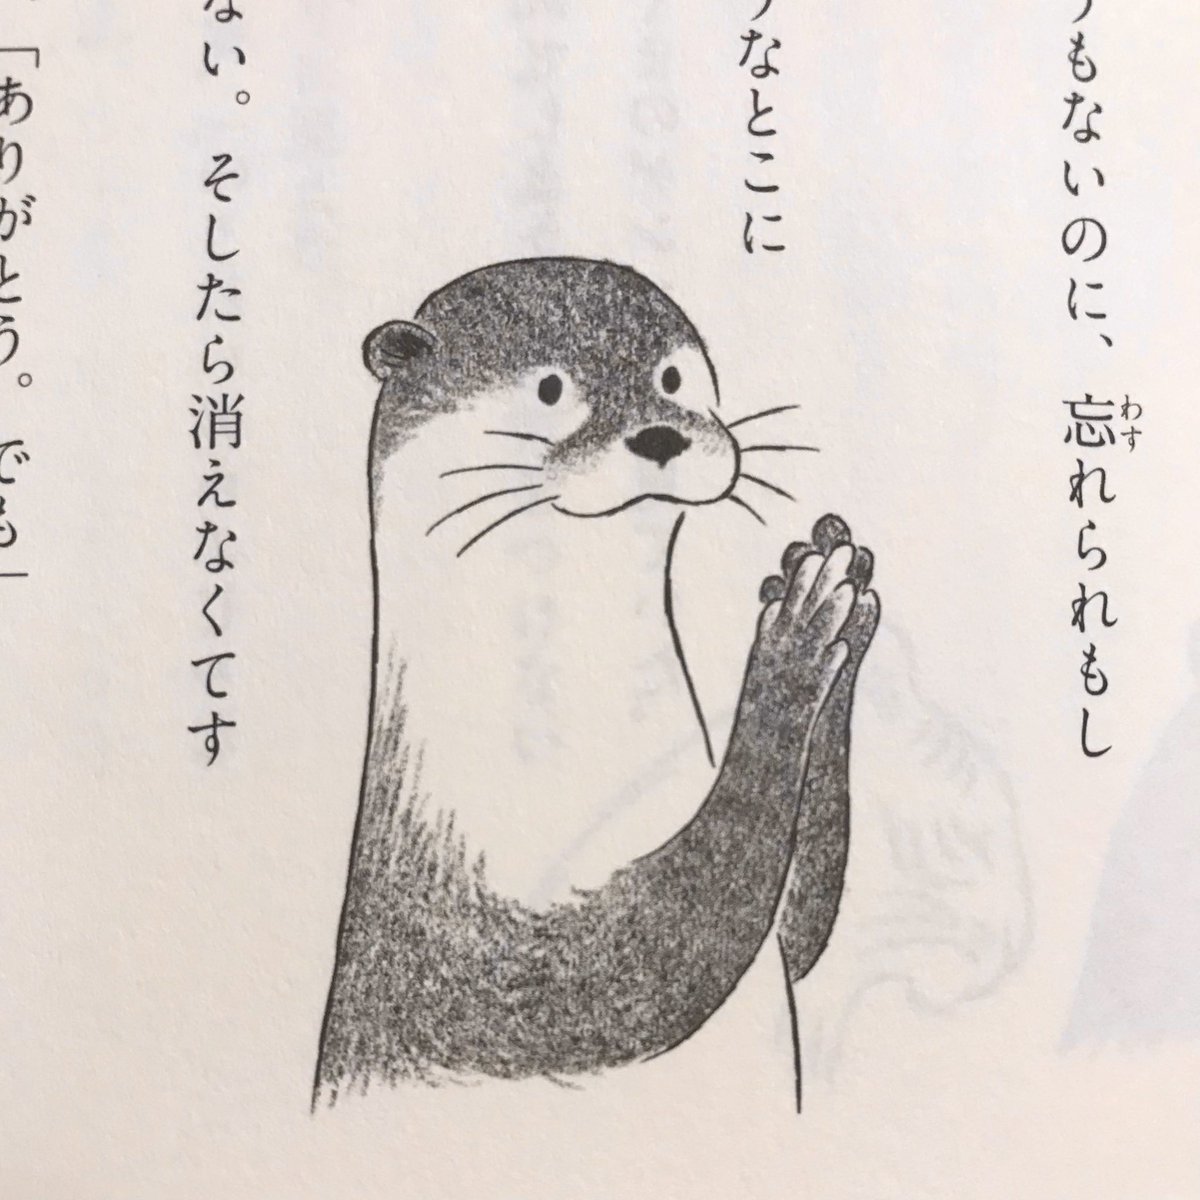 斉藤倫さん『さいごのゆうれい』ちょうどお盆ごろの季節の物語なので、ぜひ読まれてほしいです。よろしくお願いします〜 